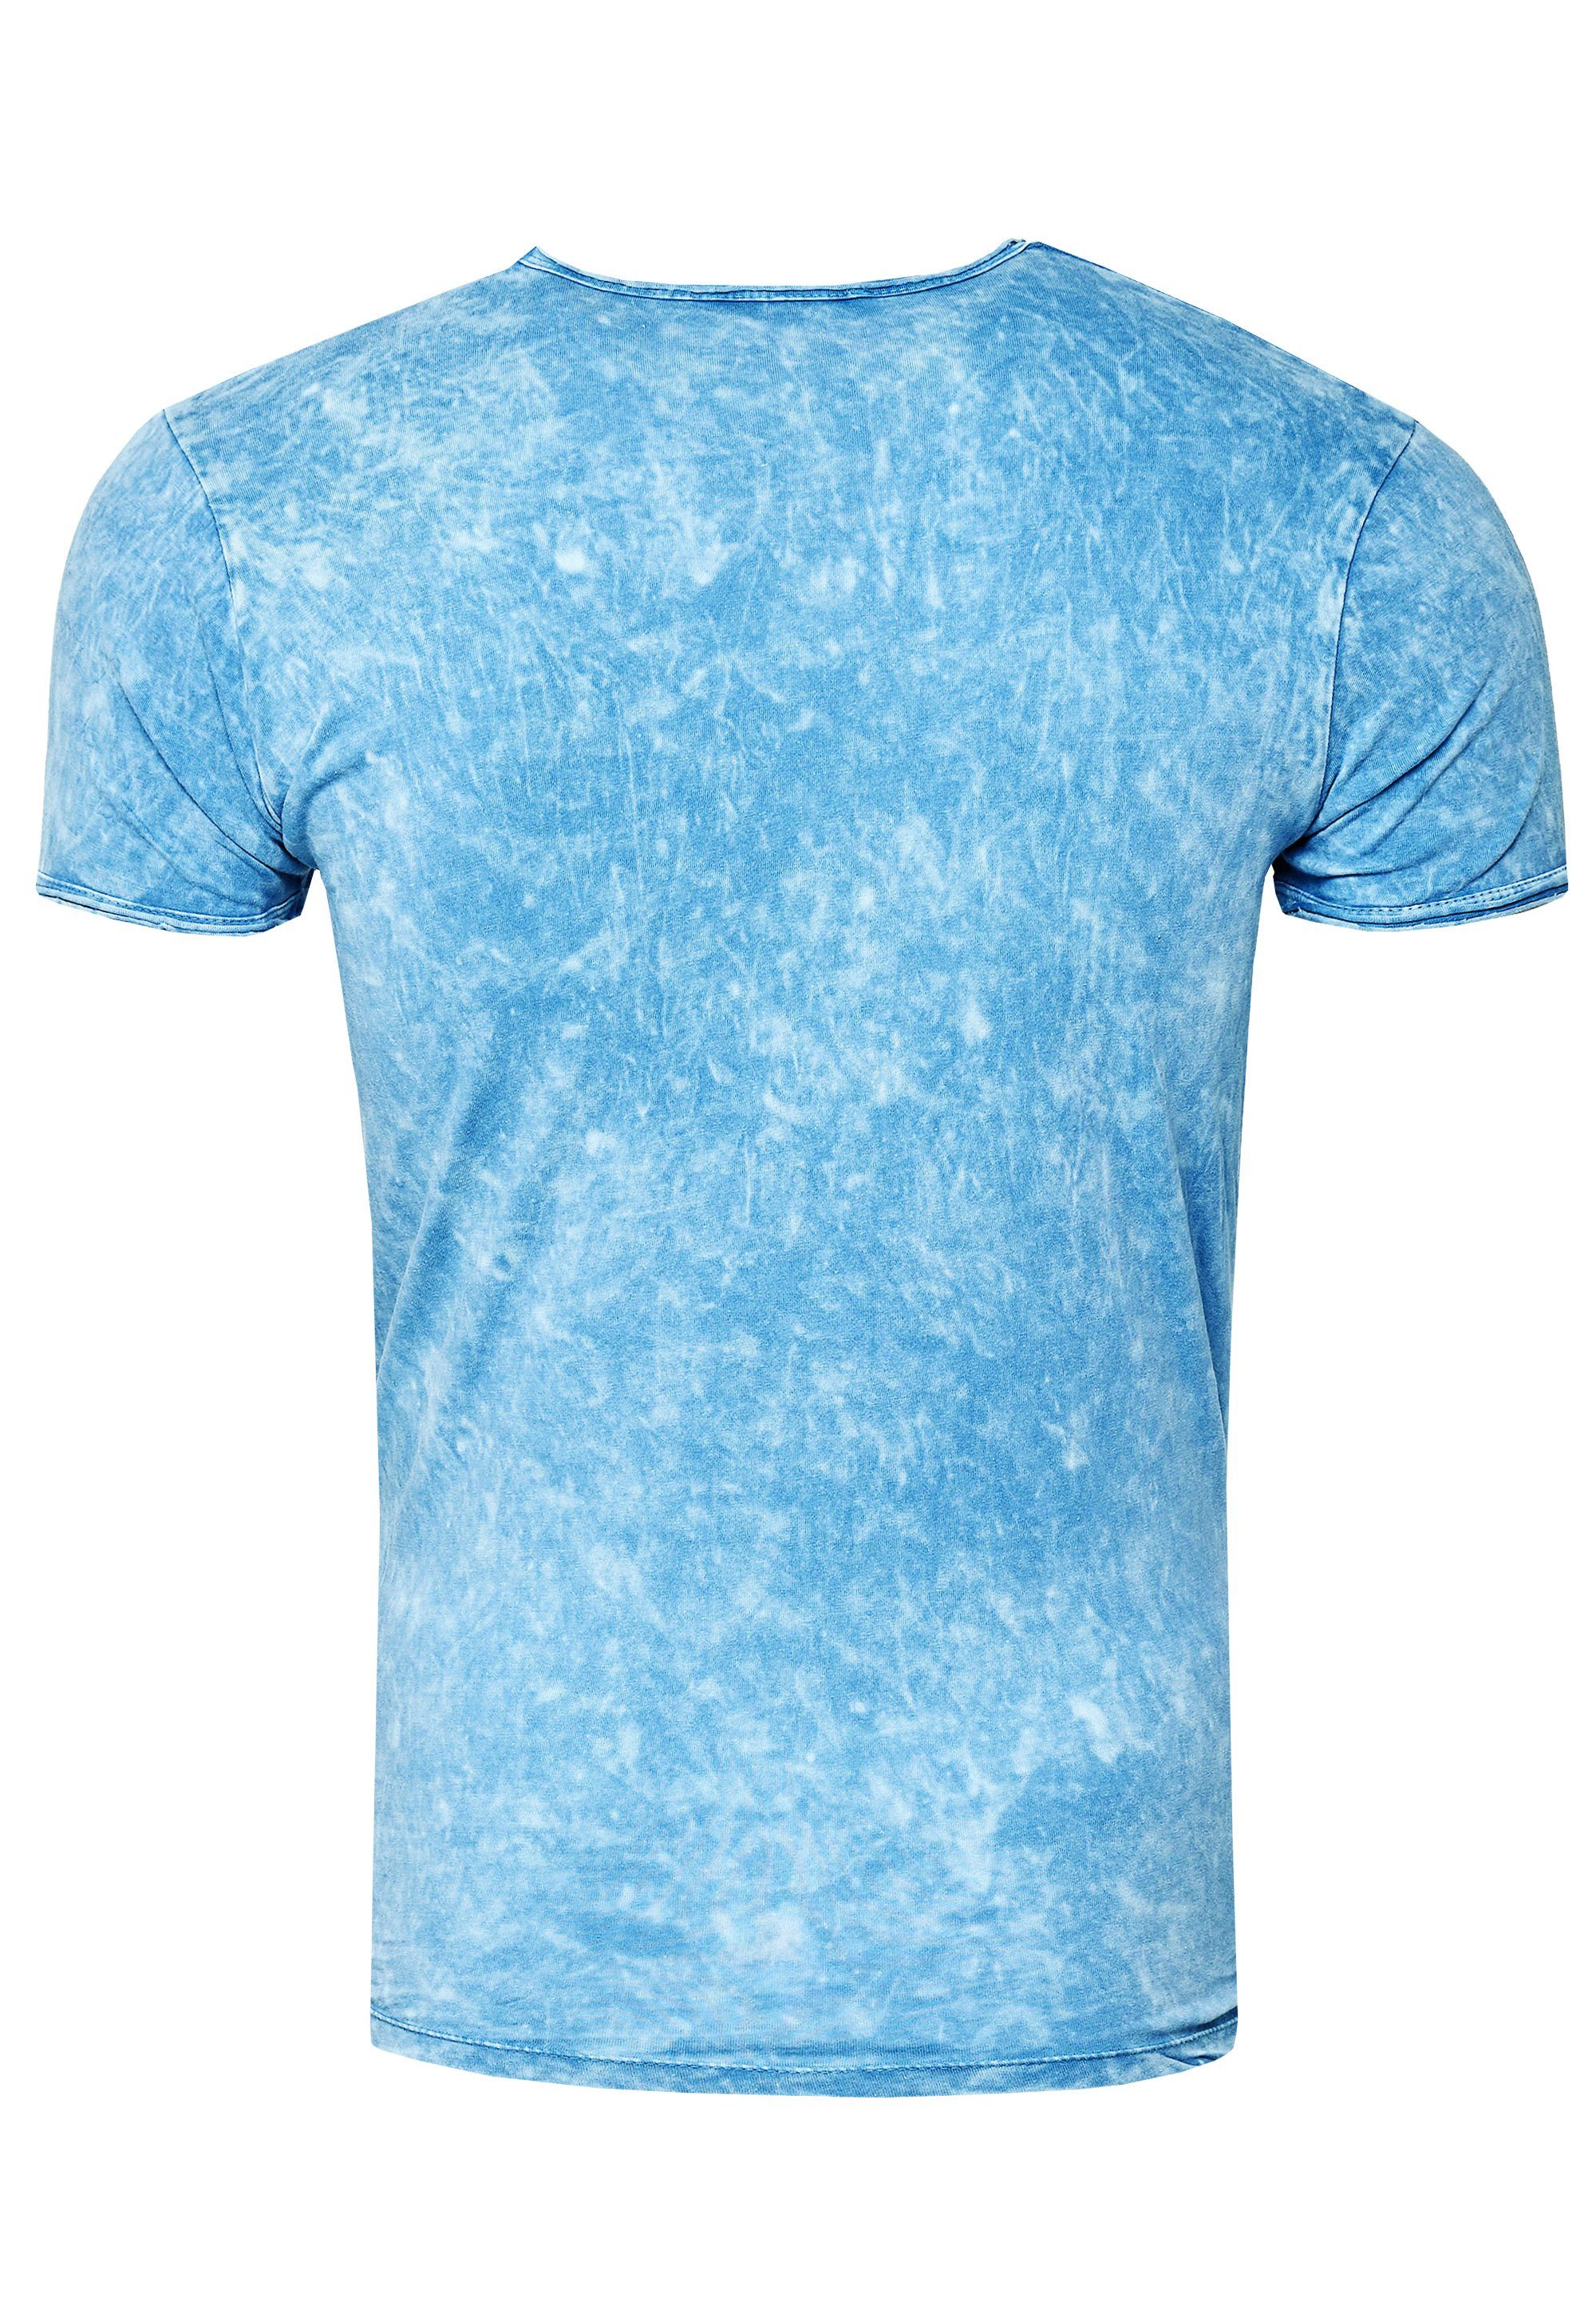 Rusty Neal Print hellblau mit T-Shirt eindrucksvollem